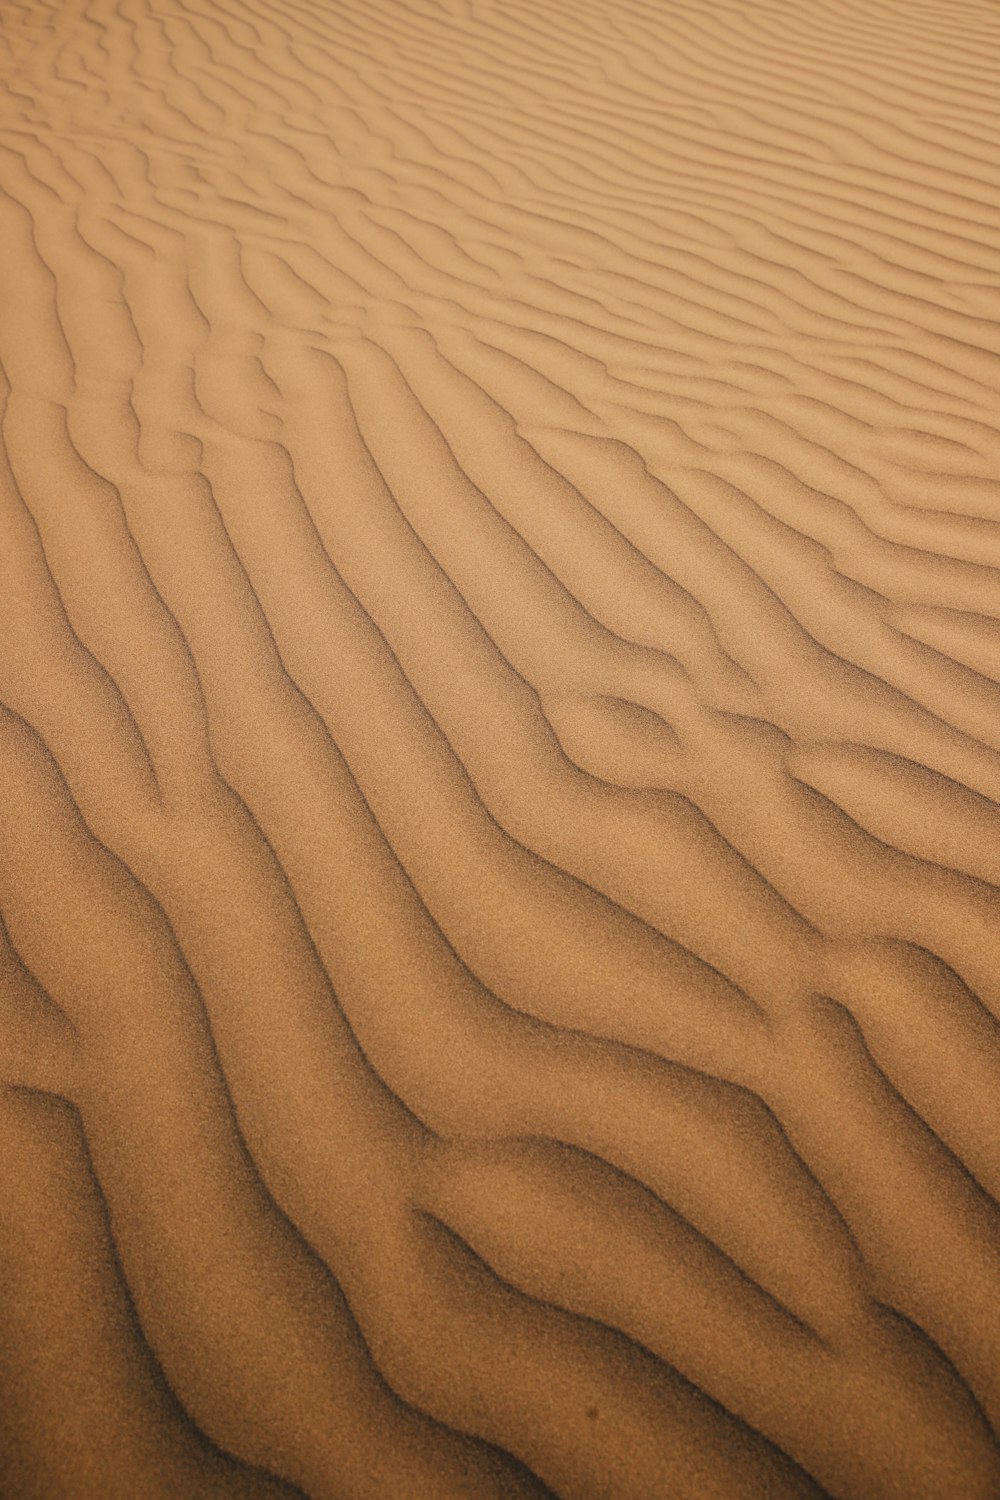 Un arenal con líneas en la arena